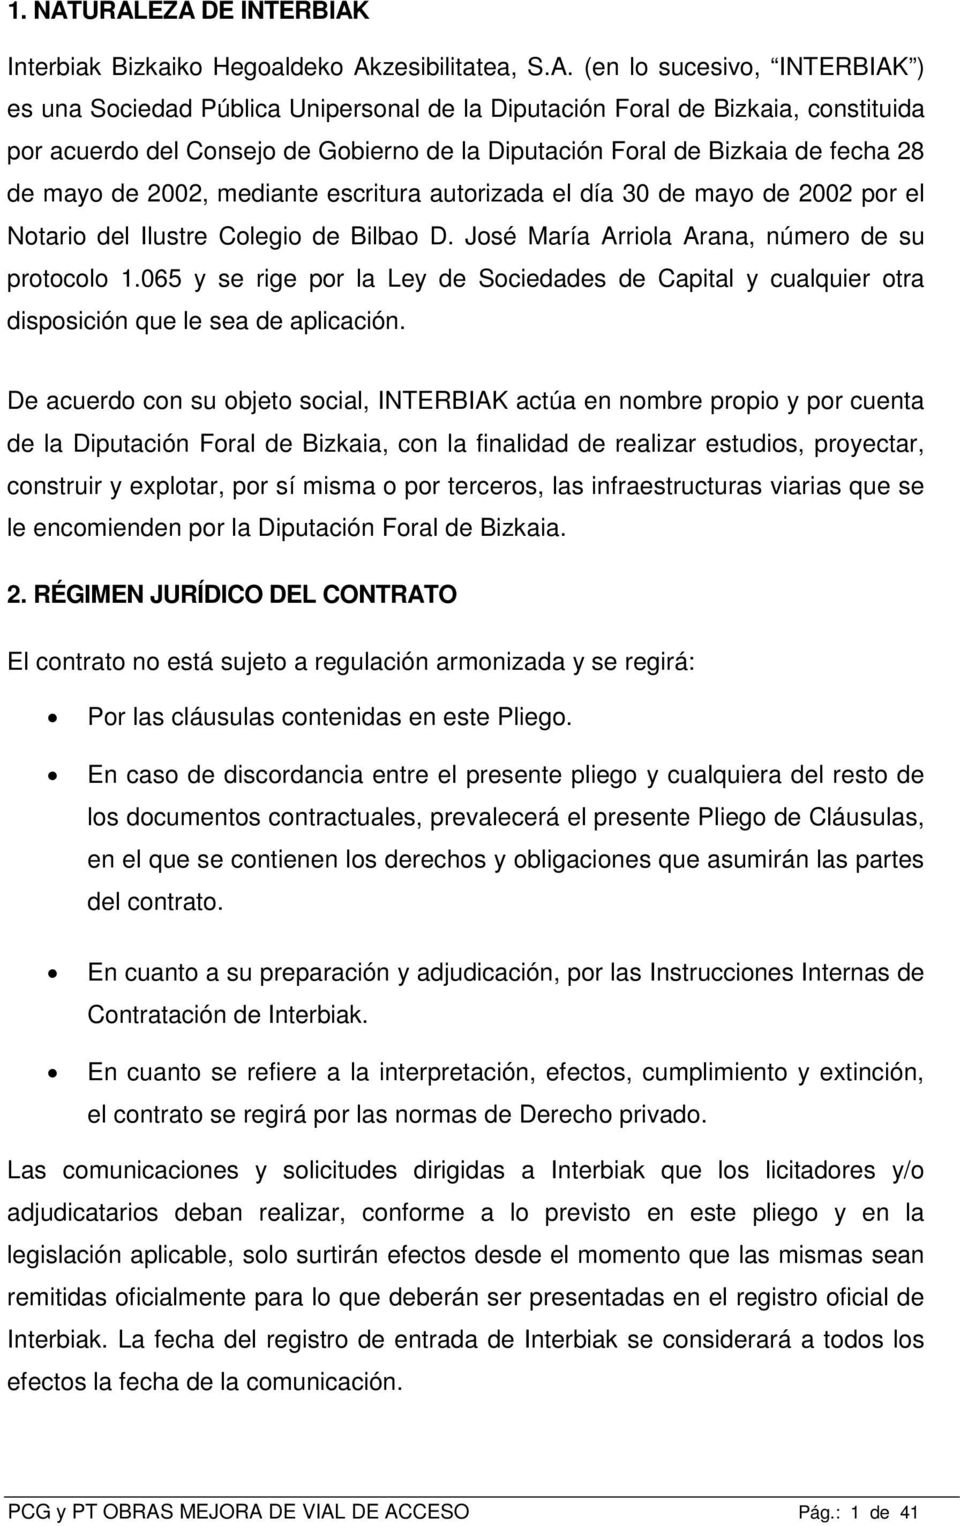 del Consejo de Gobierno de la Diputación Foral de Bizkaia de fecha 28 de mayo de 2002, mediante escritura autorizada el día 30 de mayo de 2002 por el Notario del Ilustre Colegio de Bilbao D.